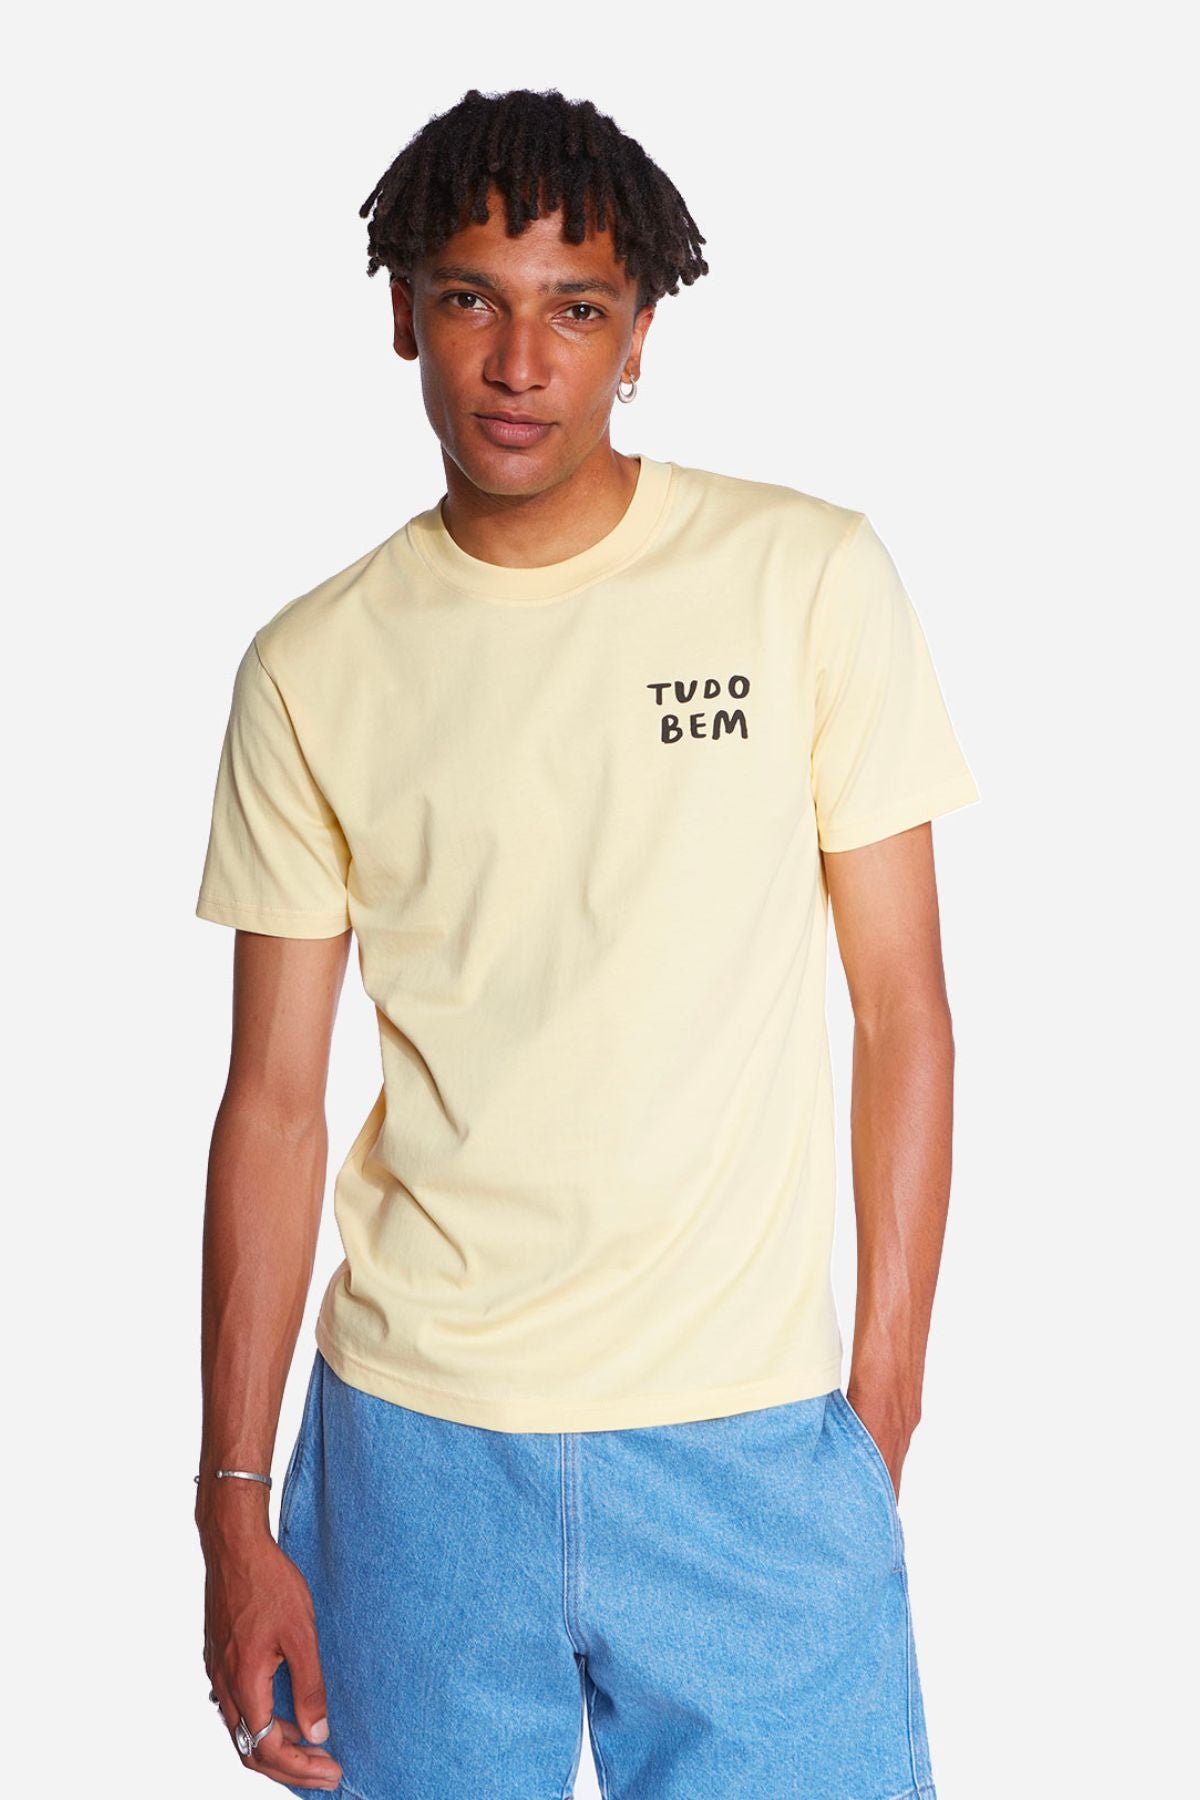 T-shirt Tudo bem - Olow